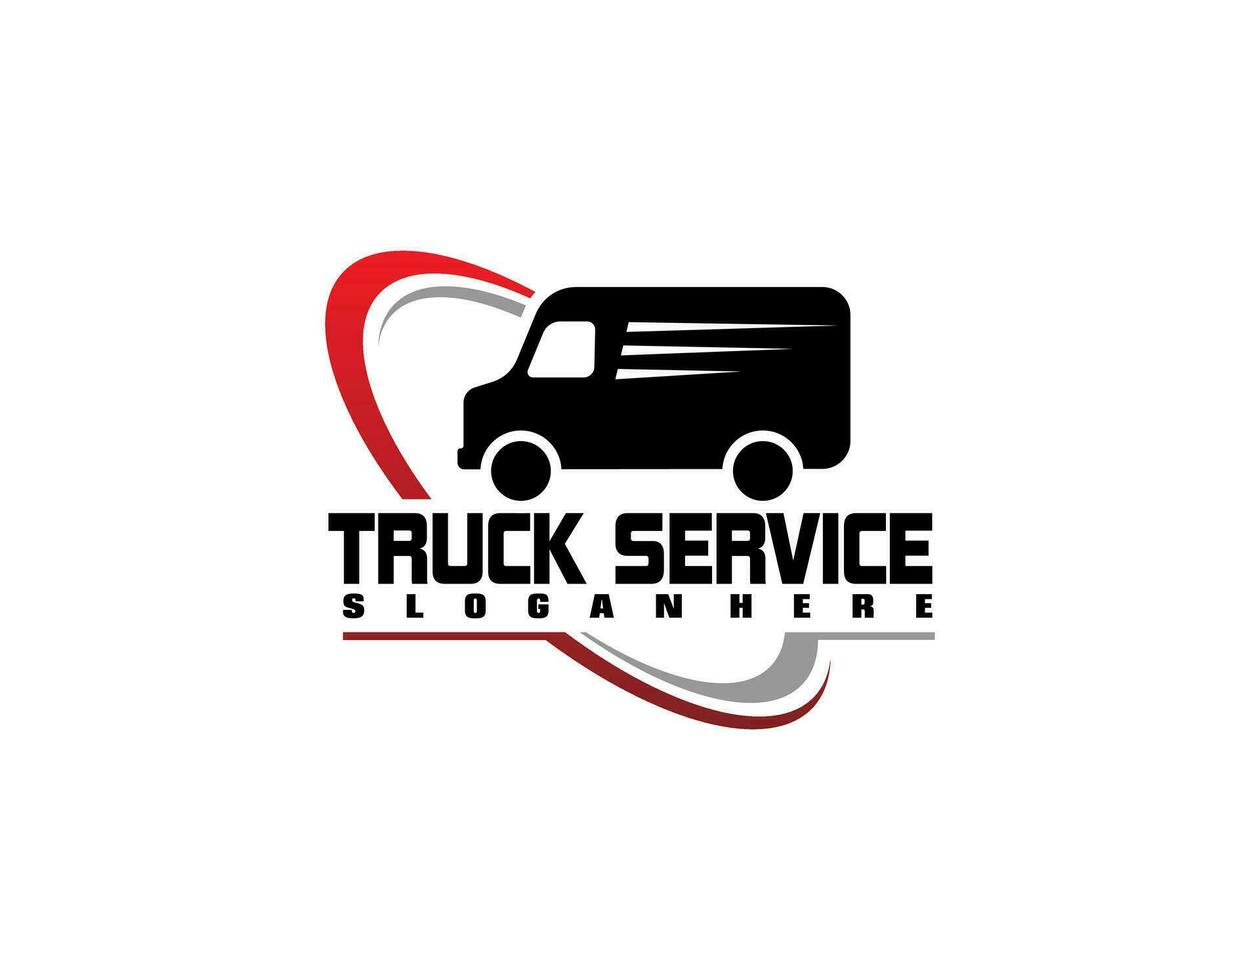 företag logotyp logistisk lastbil design trailer transport, uttrycka frakt leverans företag mall aning vektor